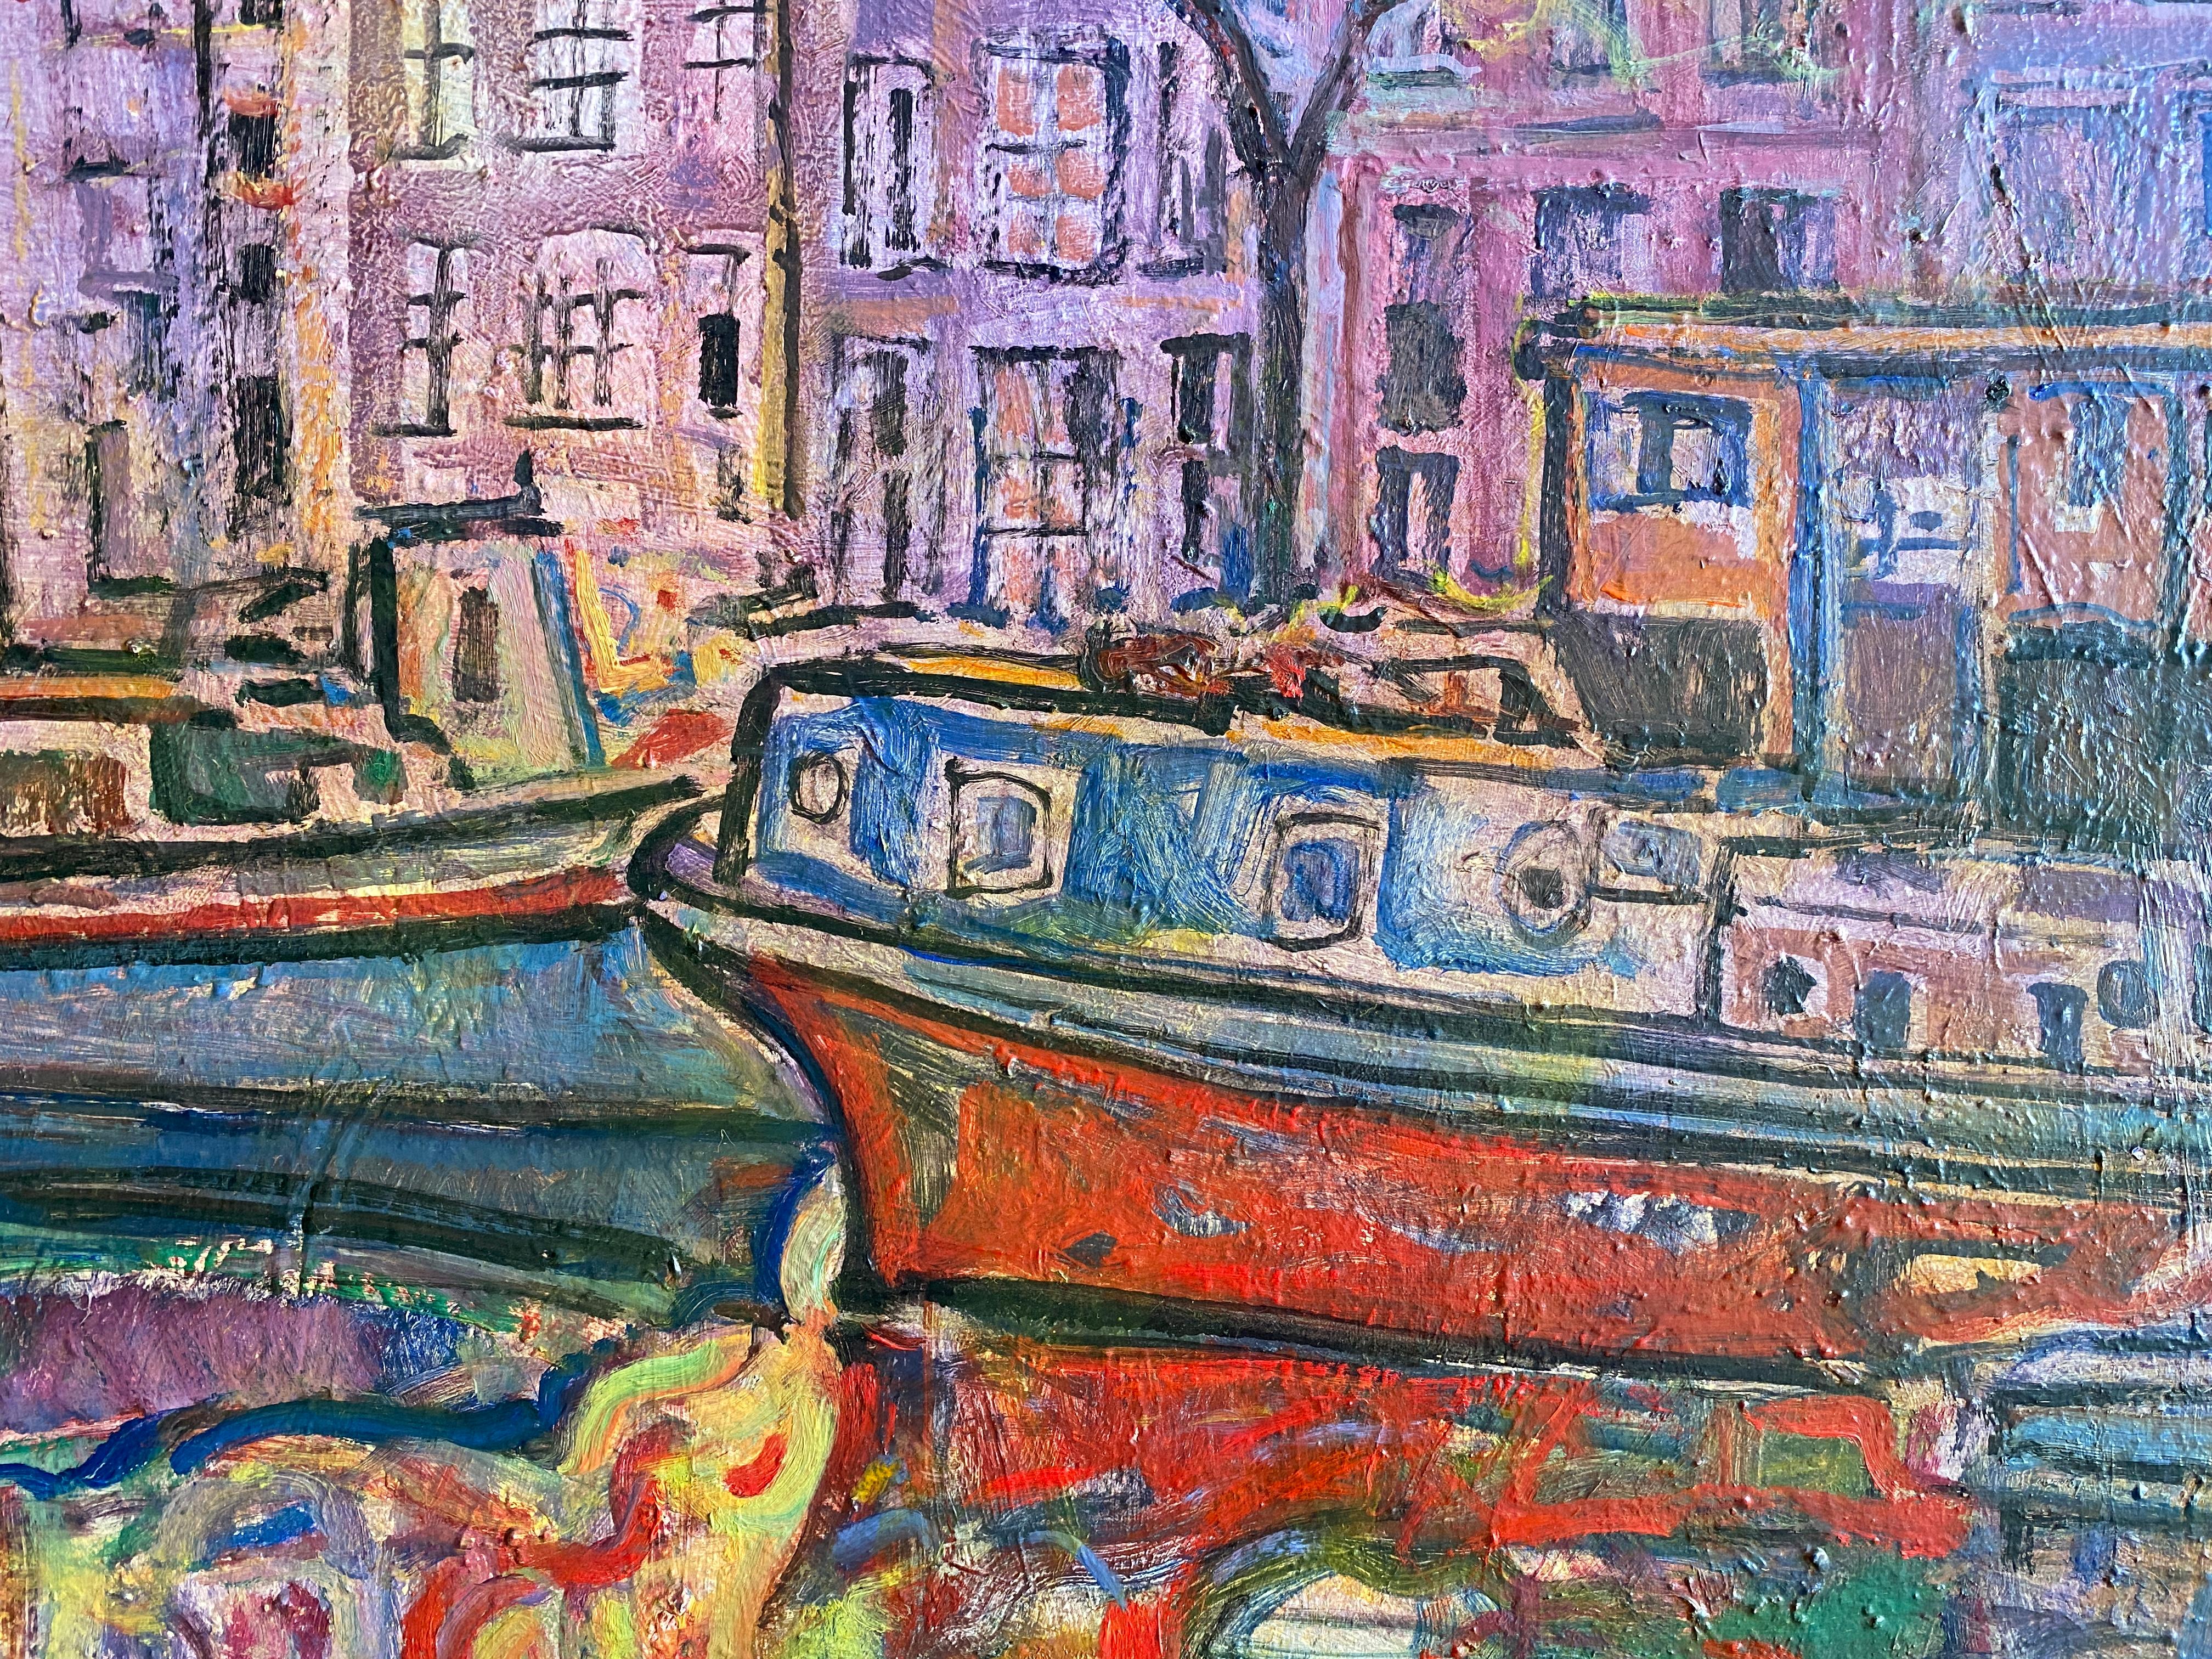 Otoño en Amsterdam (Automne à Amsterdam)  
Huile sur toile de l'artiste espagnol Joan Raset.
Dimension 81 cm H x 65 cm L x 2 cm P

Intéressante vue rapprochée d'un canal d'Amsterdam en automne. L'auteur utilise une palette de couleurs surprenante